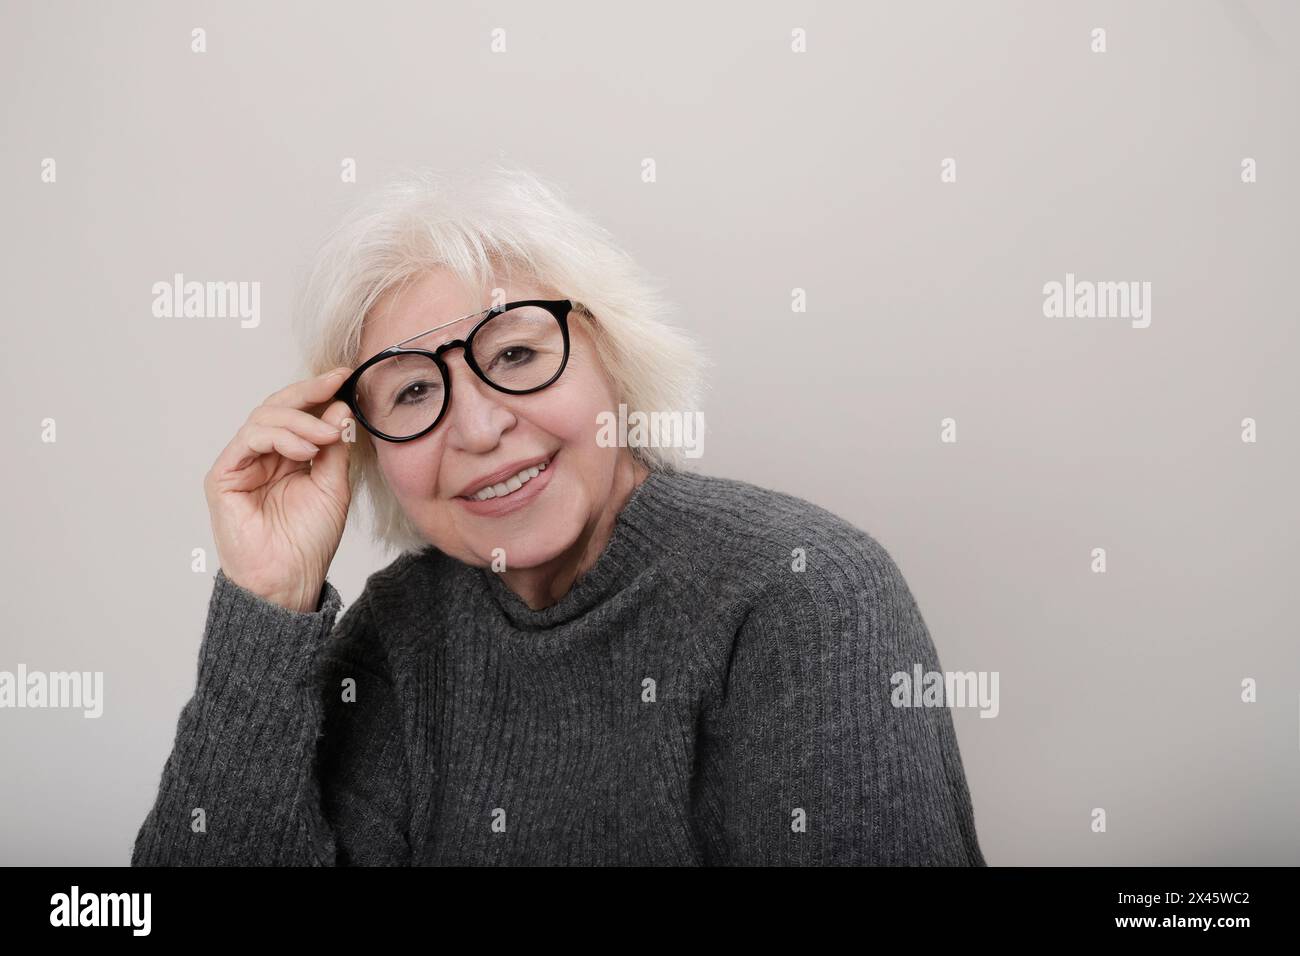 donna anziana dai capelli grigi che sorride alla fotocamera con gli occhiali Foto Stock